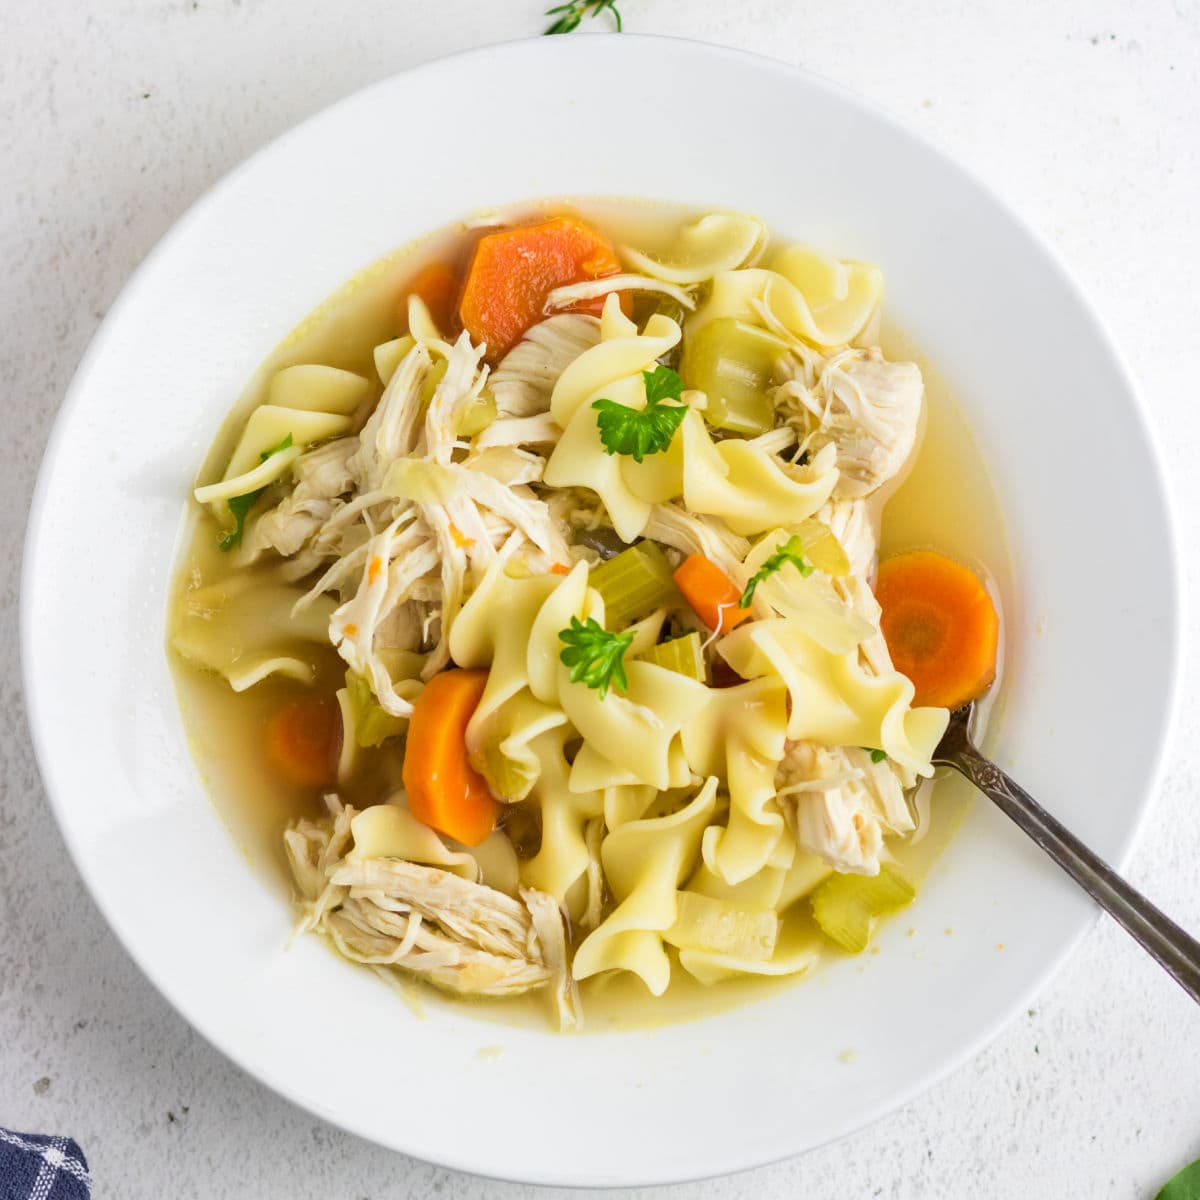 Panera bread chicken noodle soup - easy copycat panera soup recipe